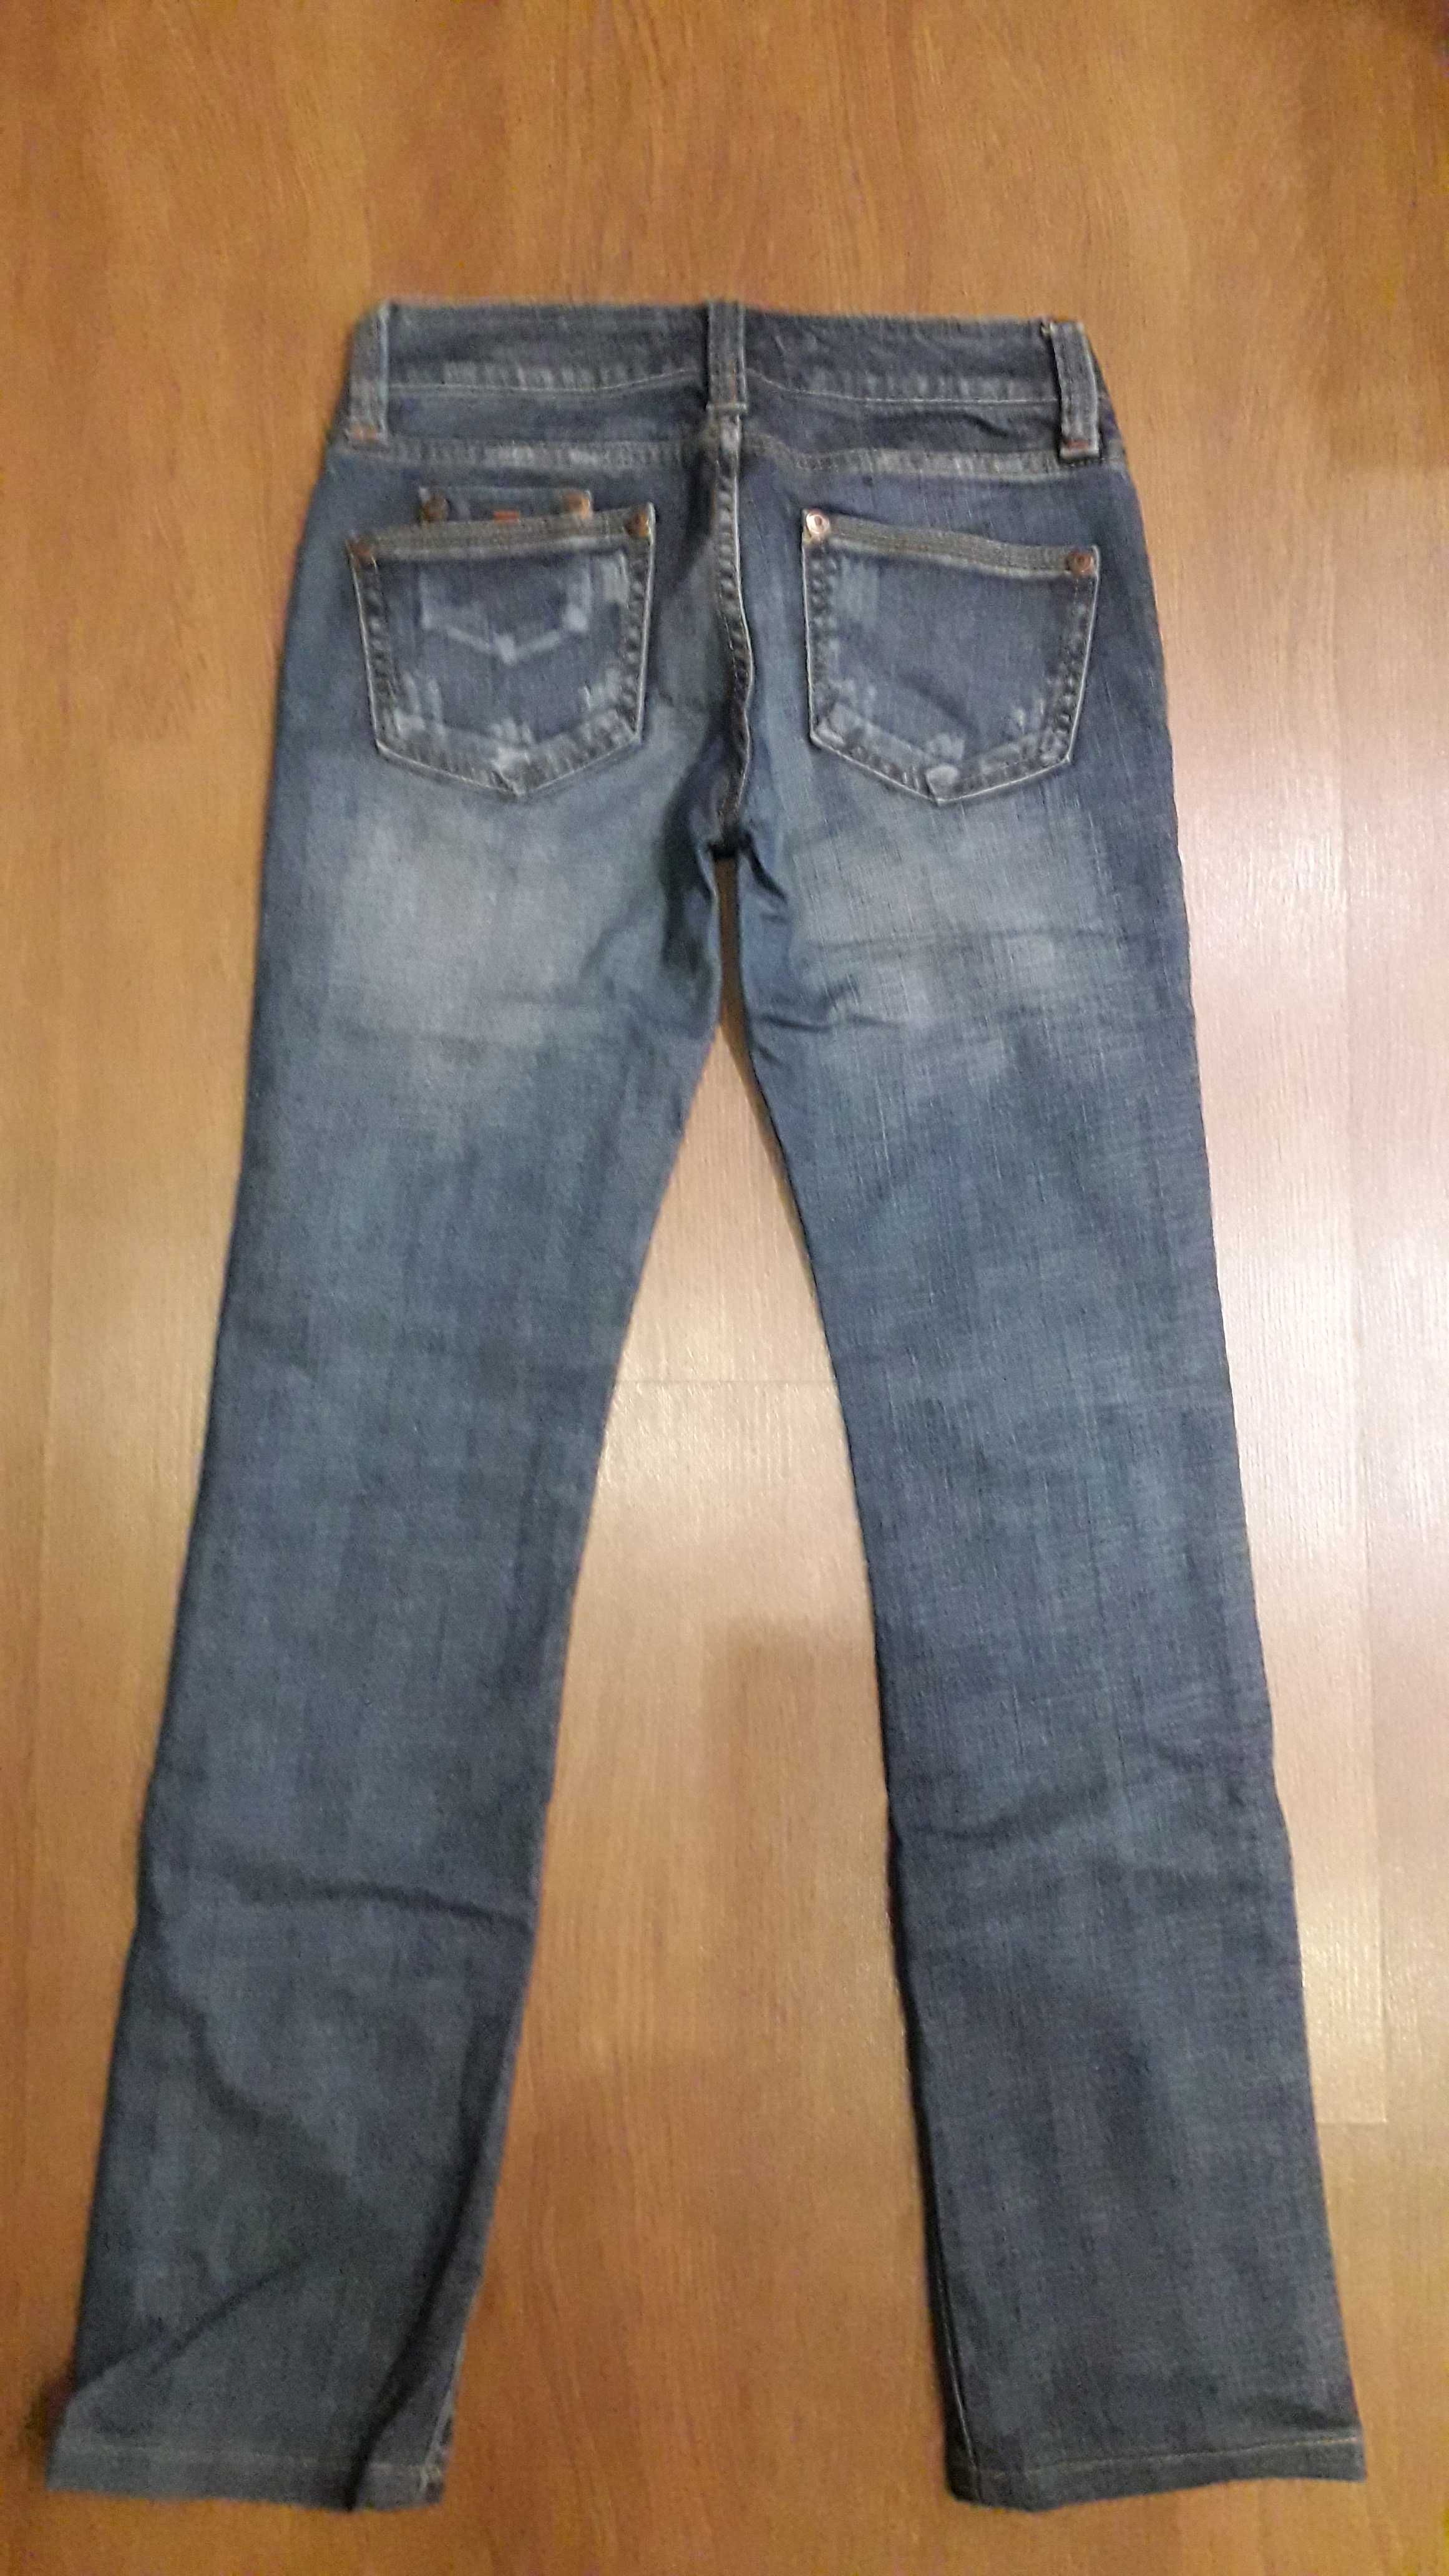 Пакет одежды - джинсы, на 10-12 лет